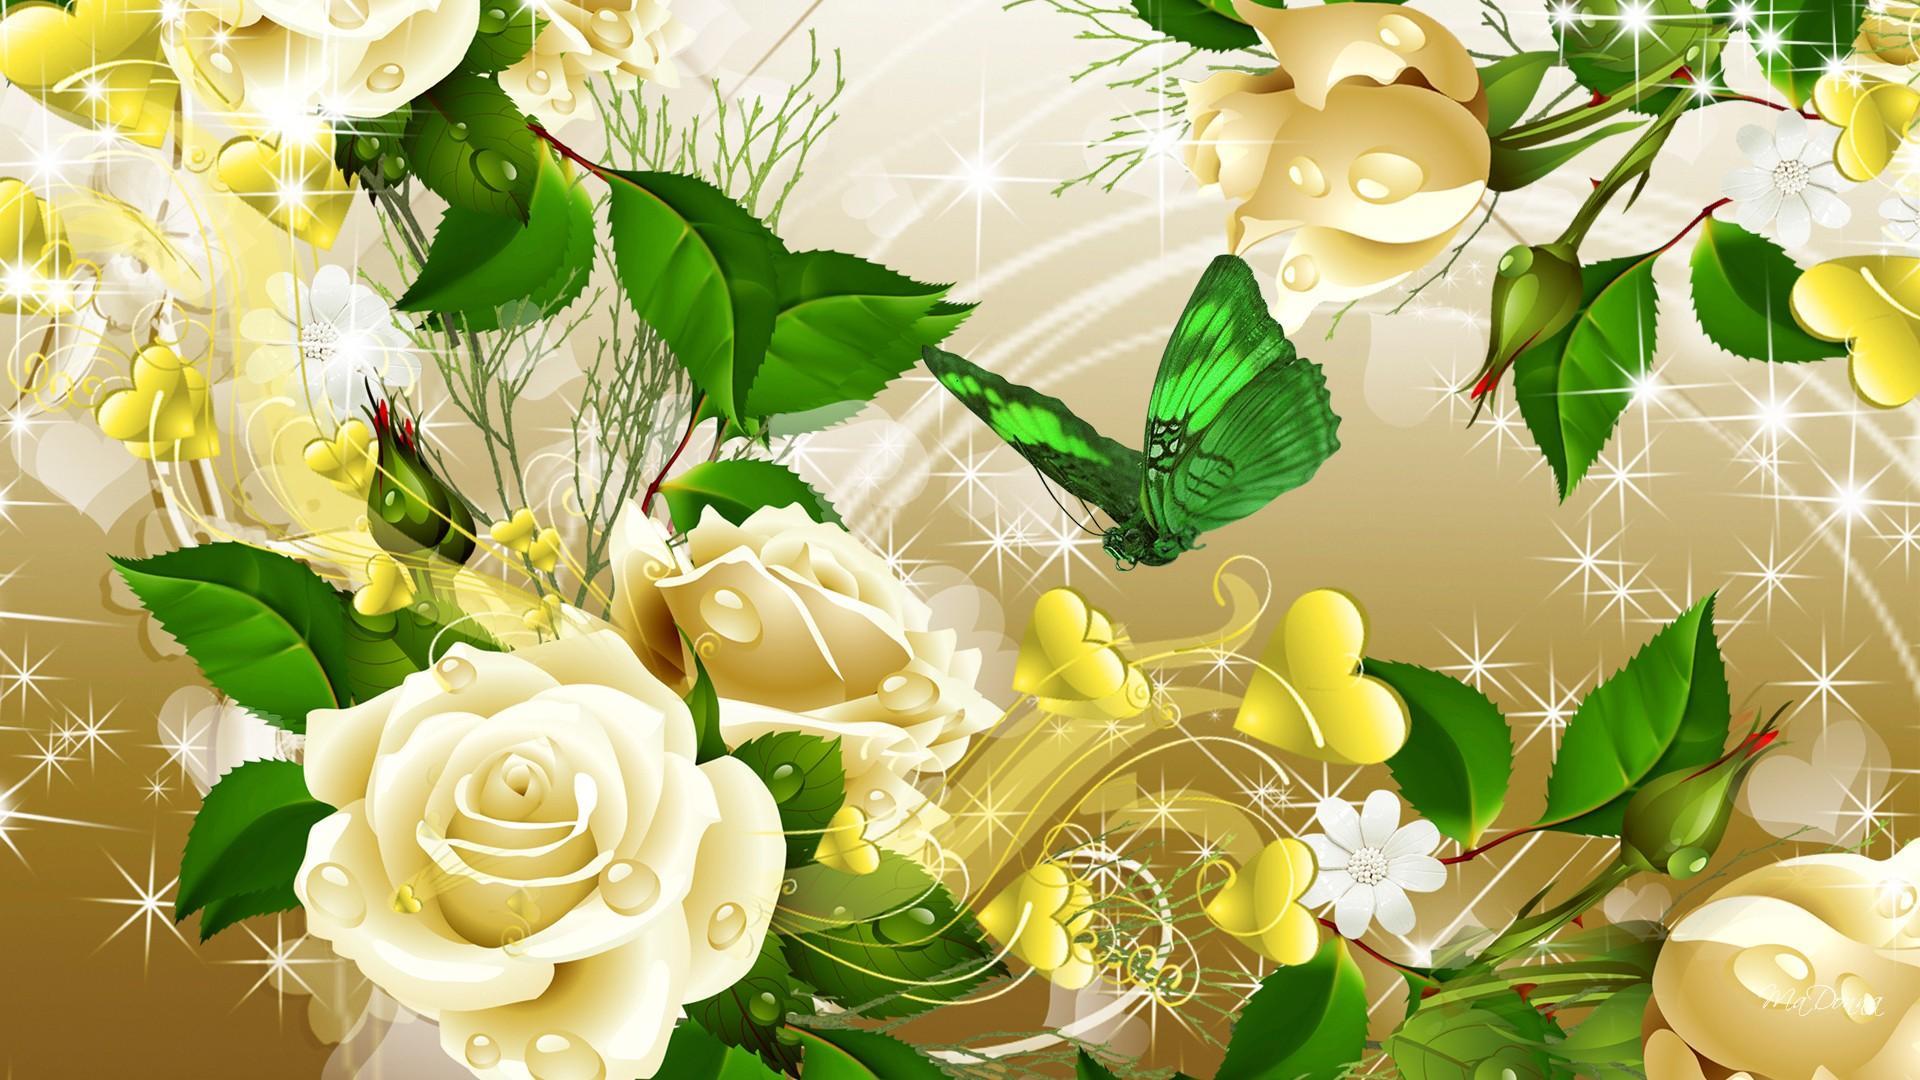 Chia sẻ với hơn 338 hình nền hoa hồng vàng hay nhất  cbnguyendinhchieu